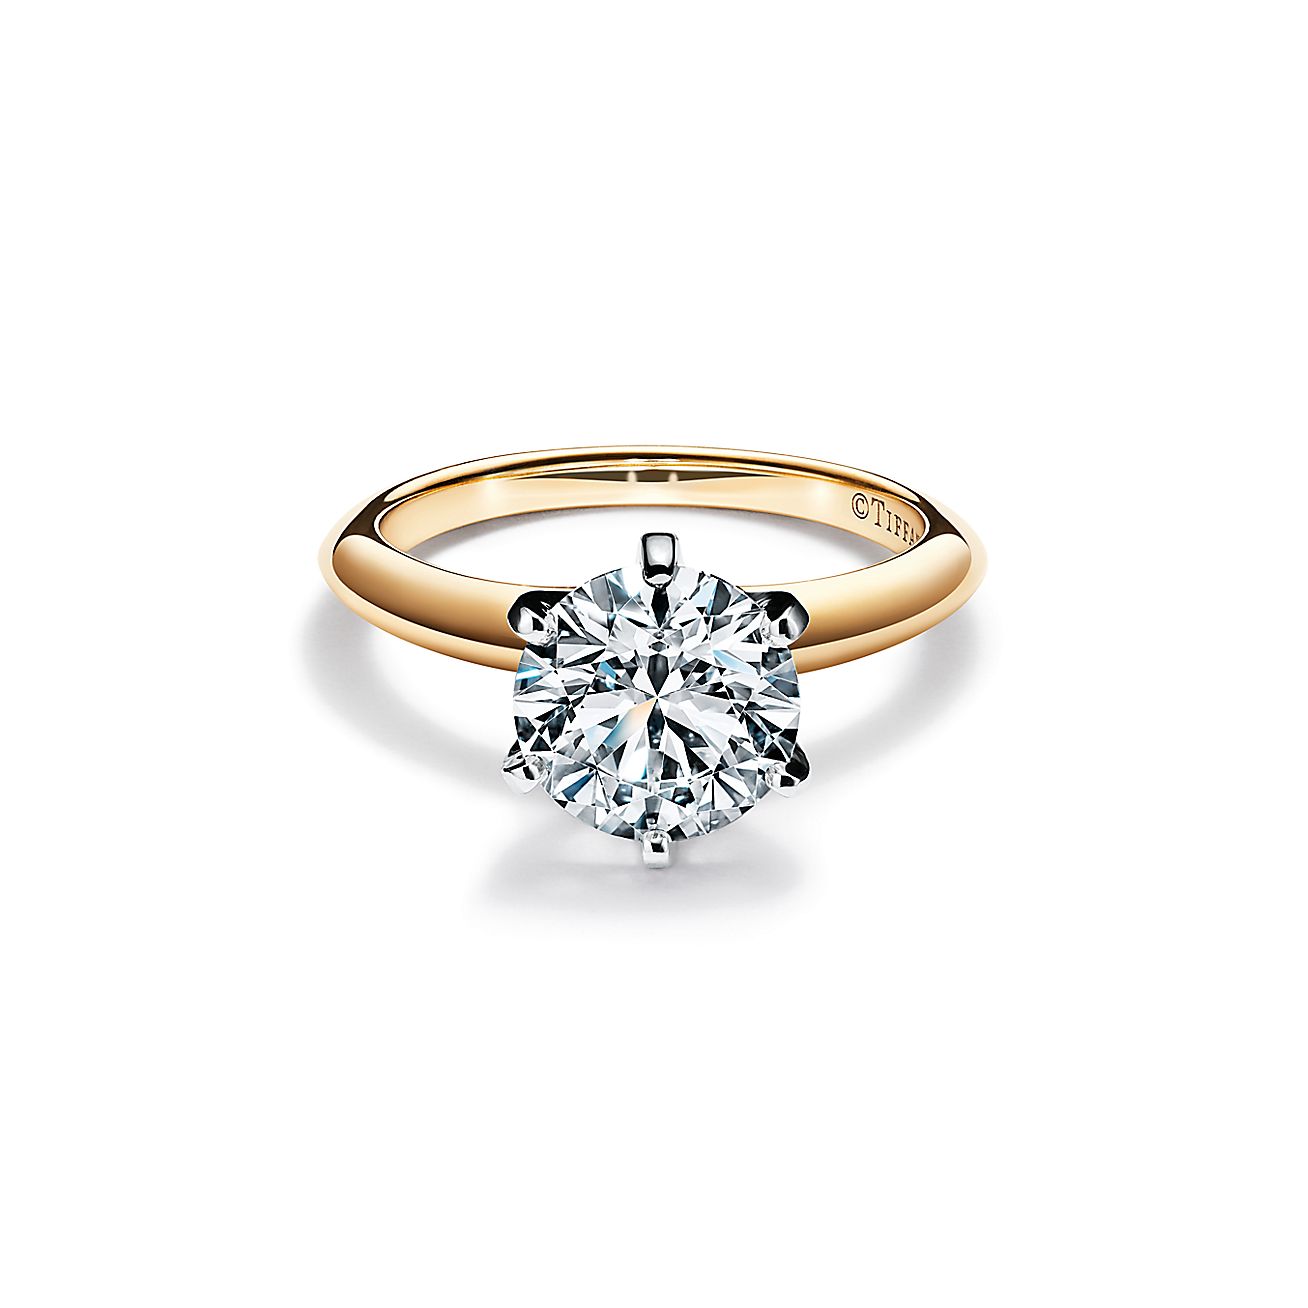 principal Asesor Calígrafo El anillo de compromiso Tiffany® Setting en oro amarillo de 18 quilates